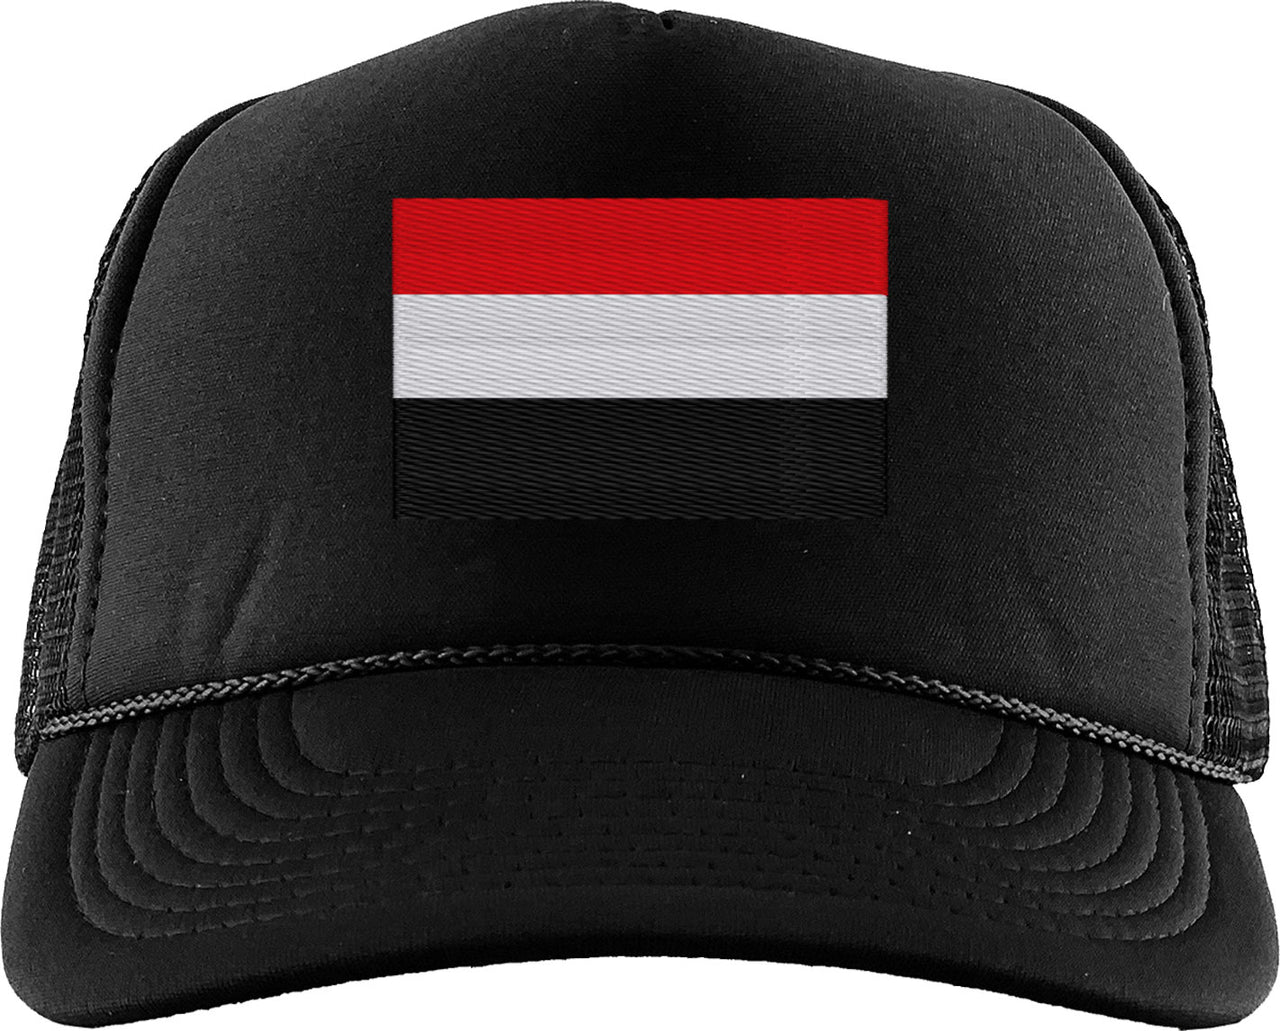 Yemen Flag Foam Trucker Hat